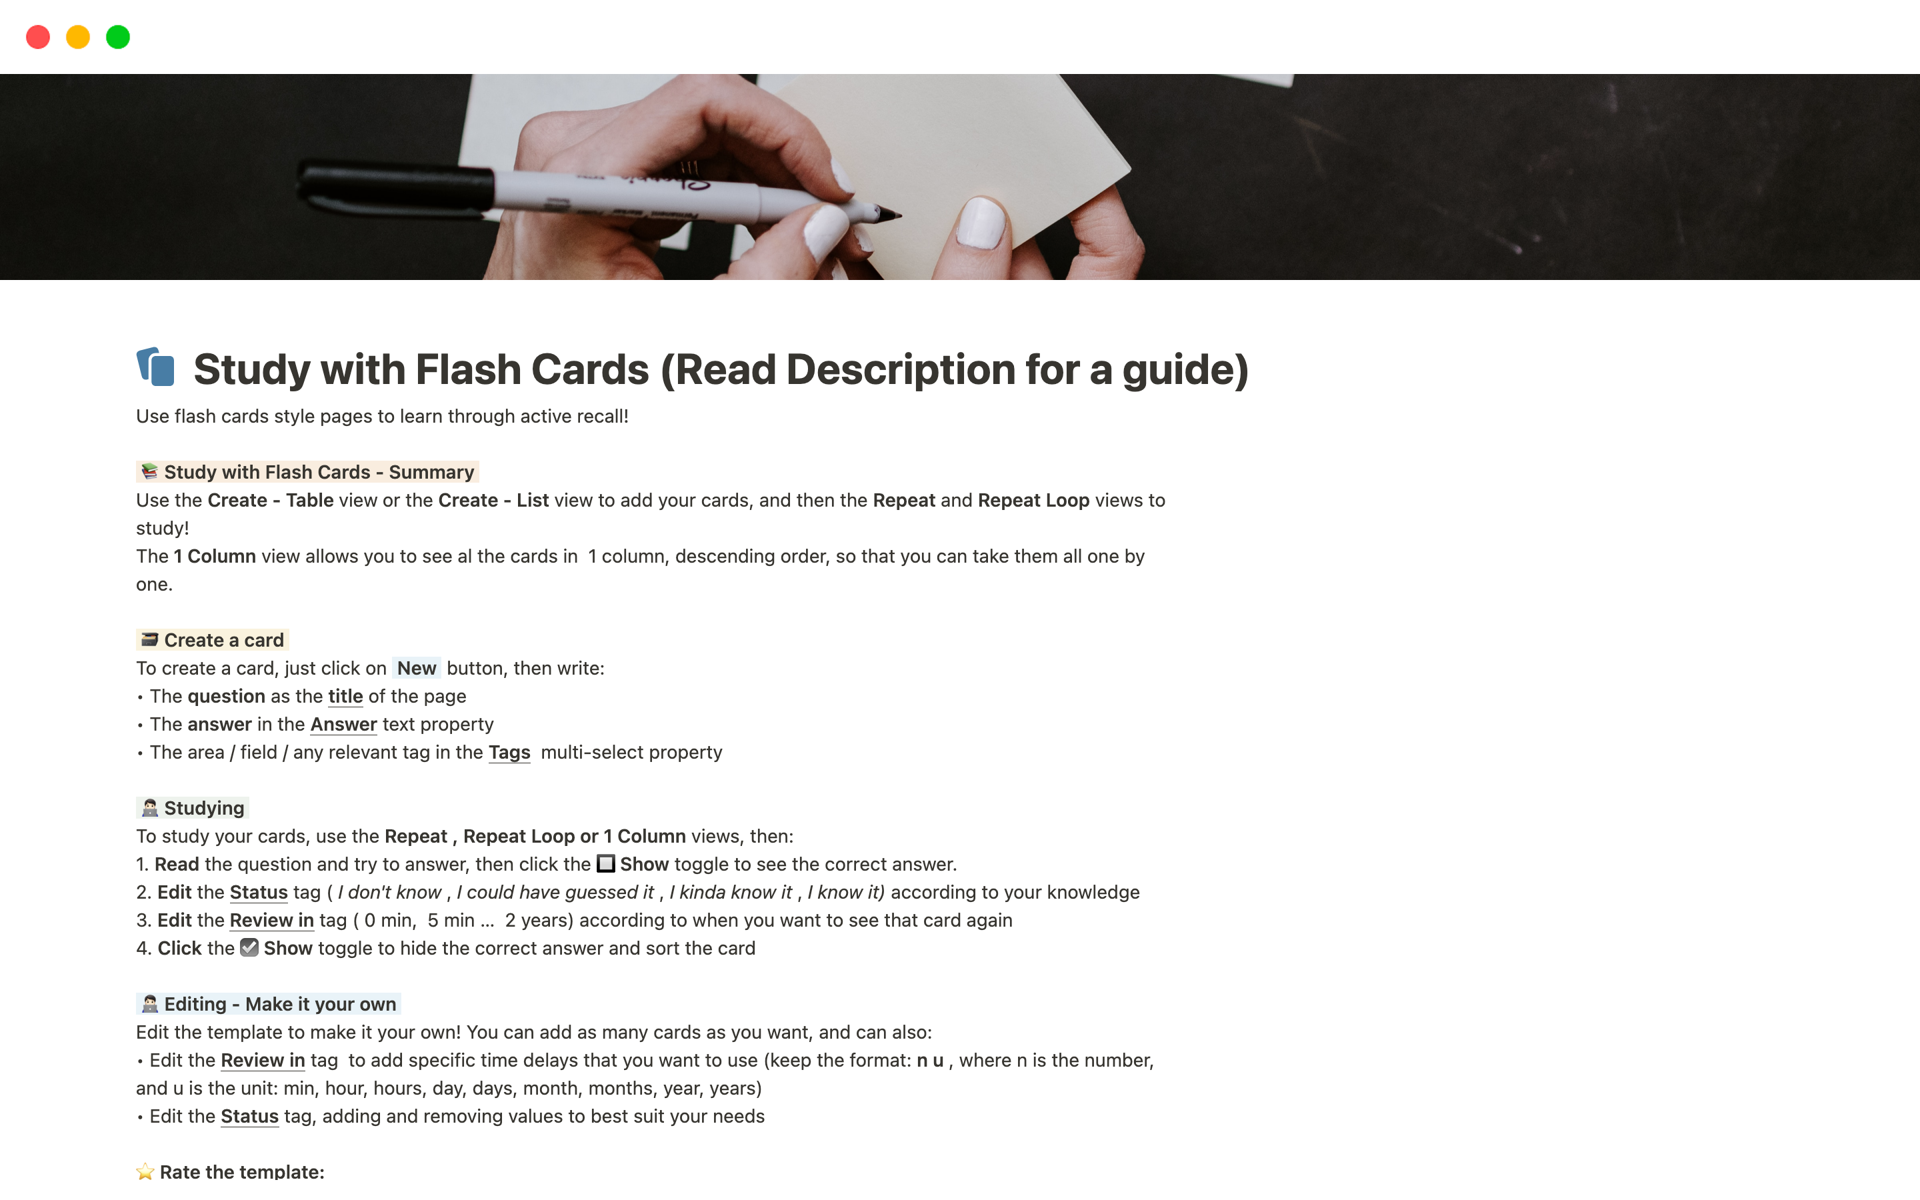 Uma prévia do modelo para Flash Cards Template - Study using active recall